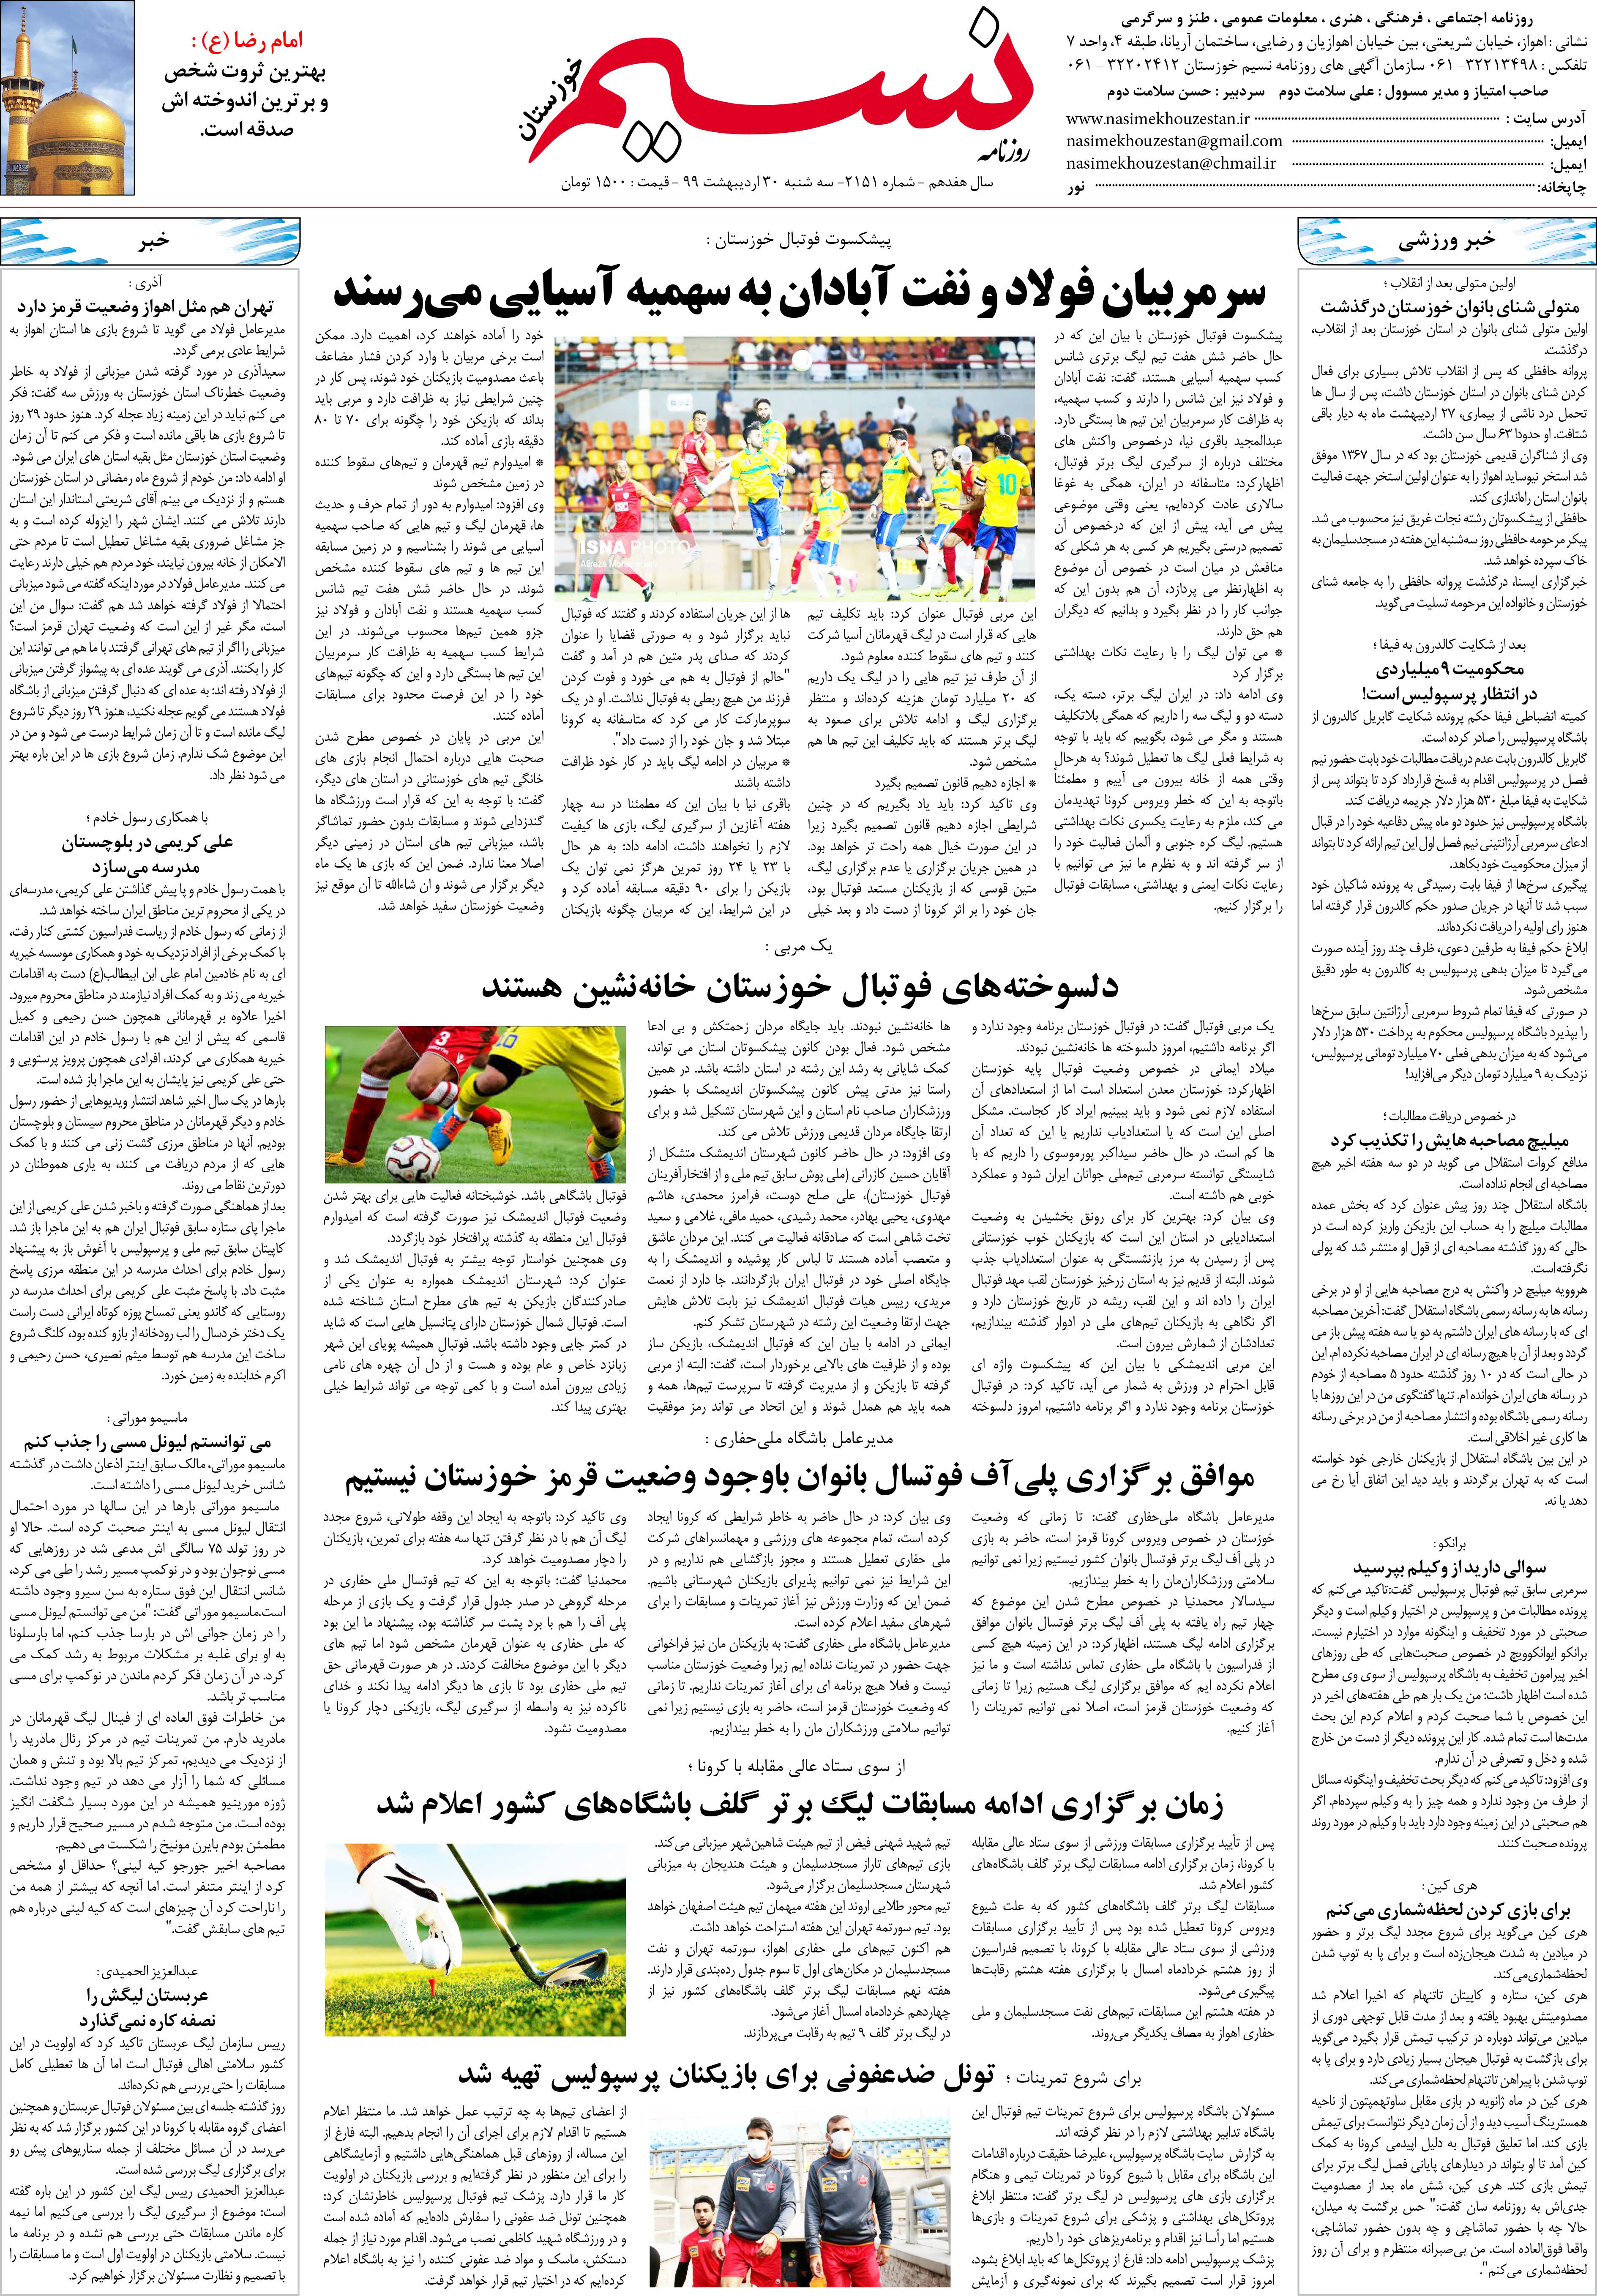 صفحه آخر روزنامه نسیم شماره 2151